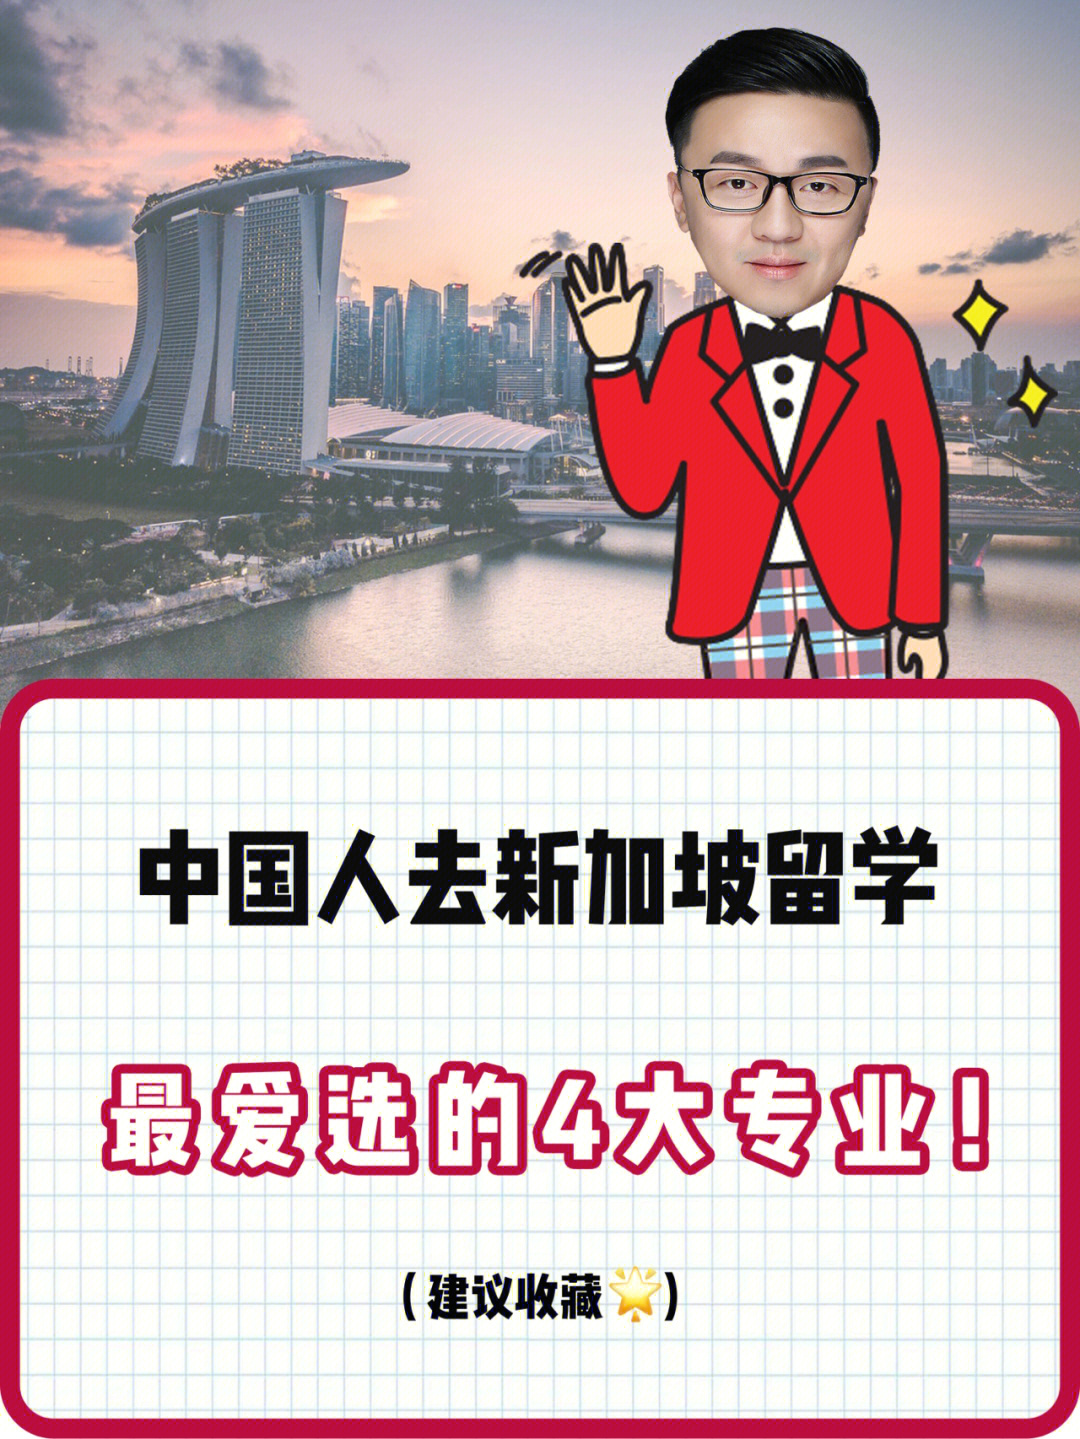 中国人去新加坡留学蕞爱选的4大专业60